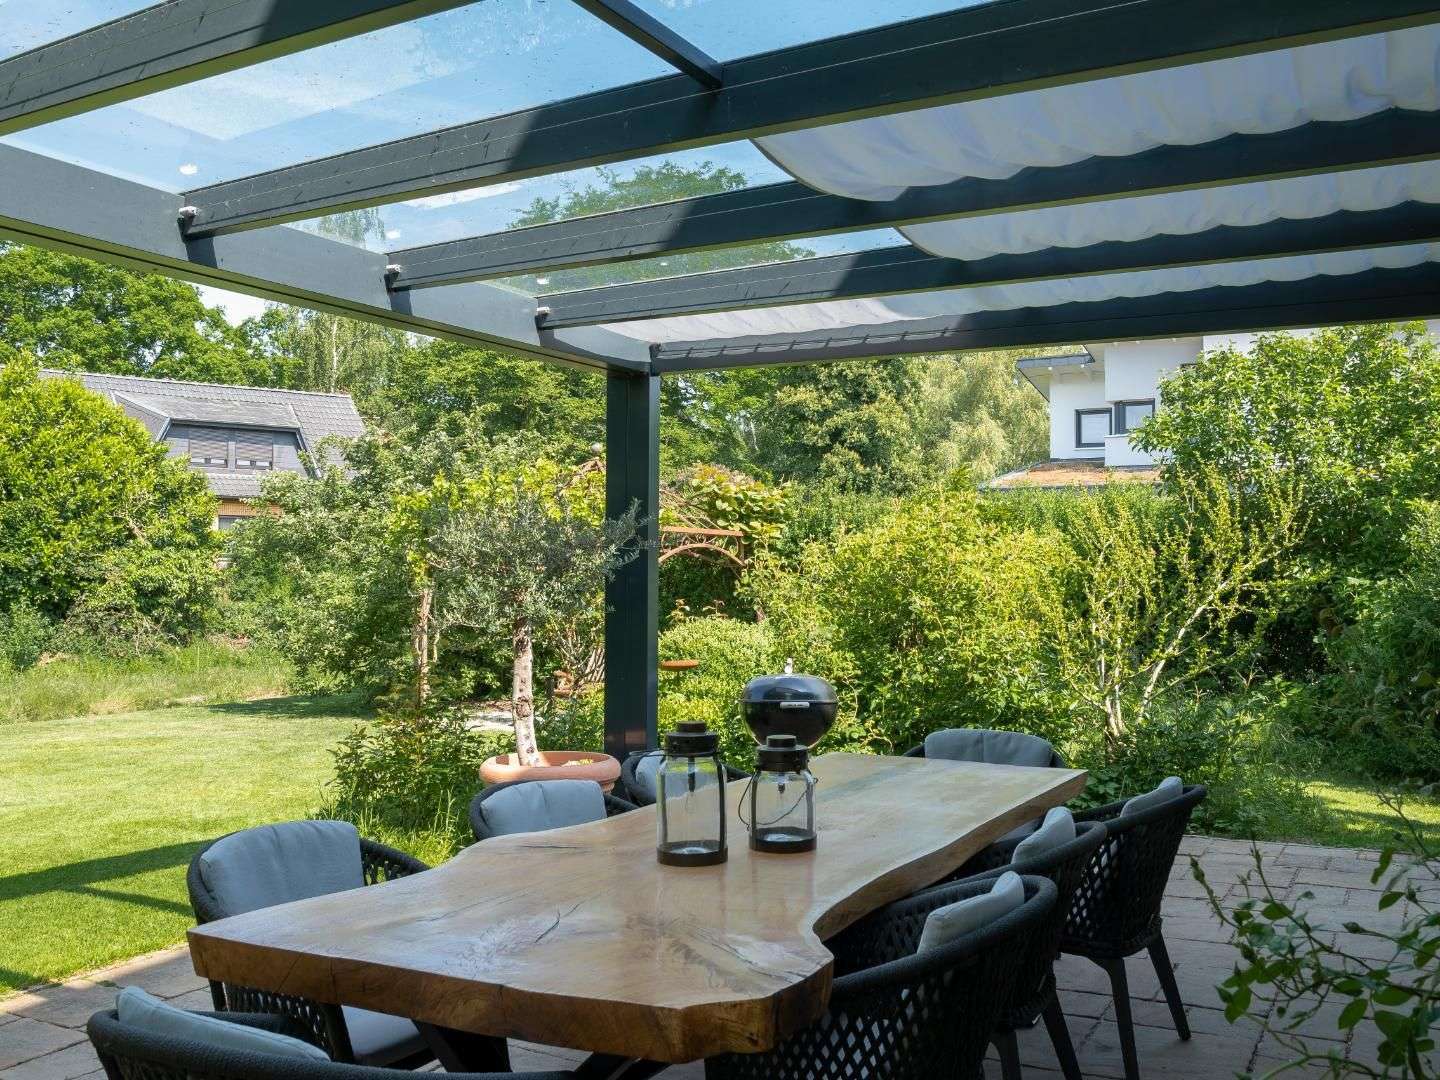 Innenansicht eines Terrassendaches mit Seilspann-Sonnensegel 